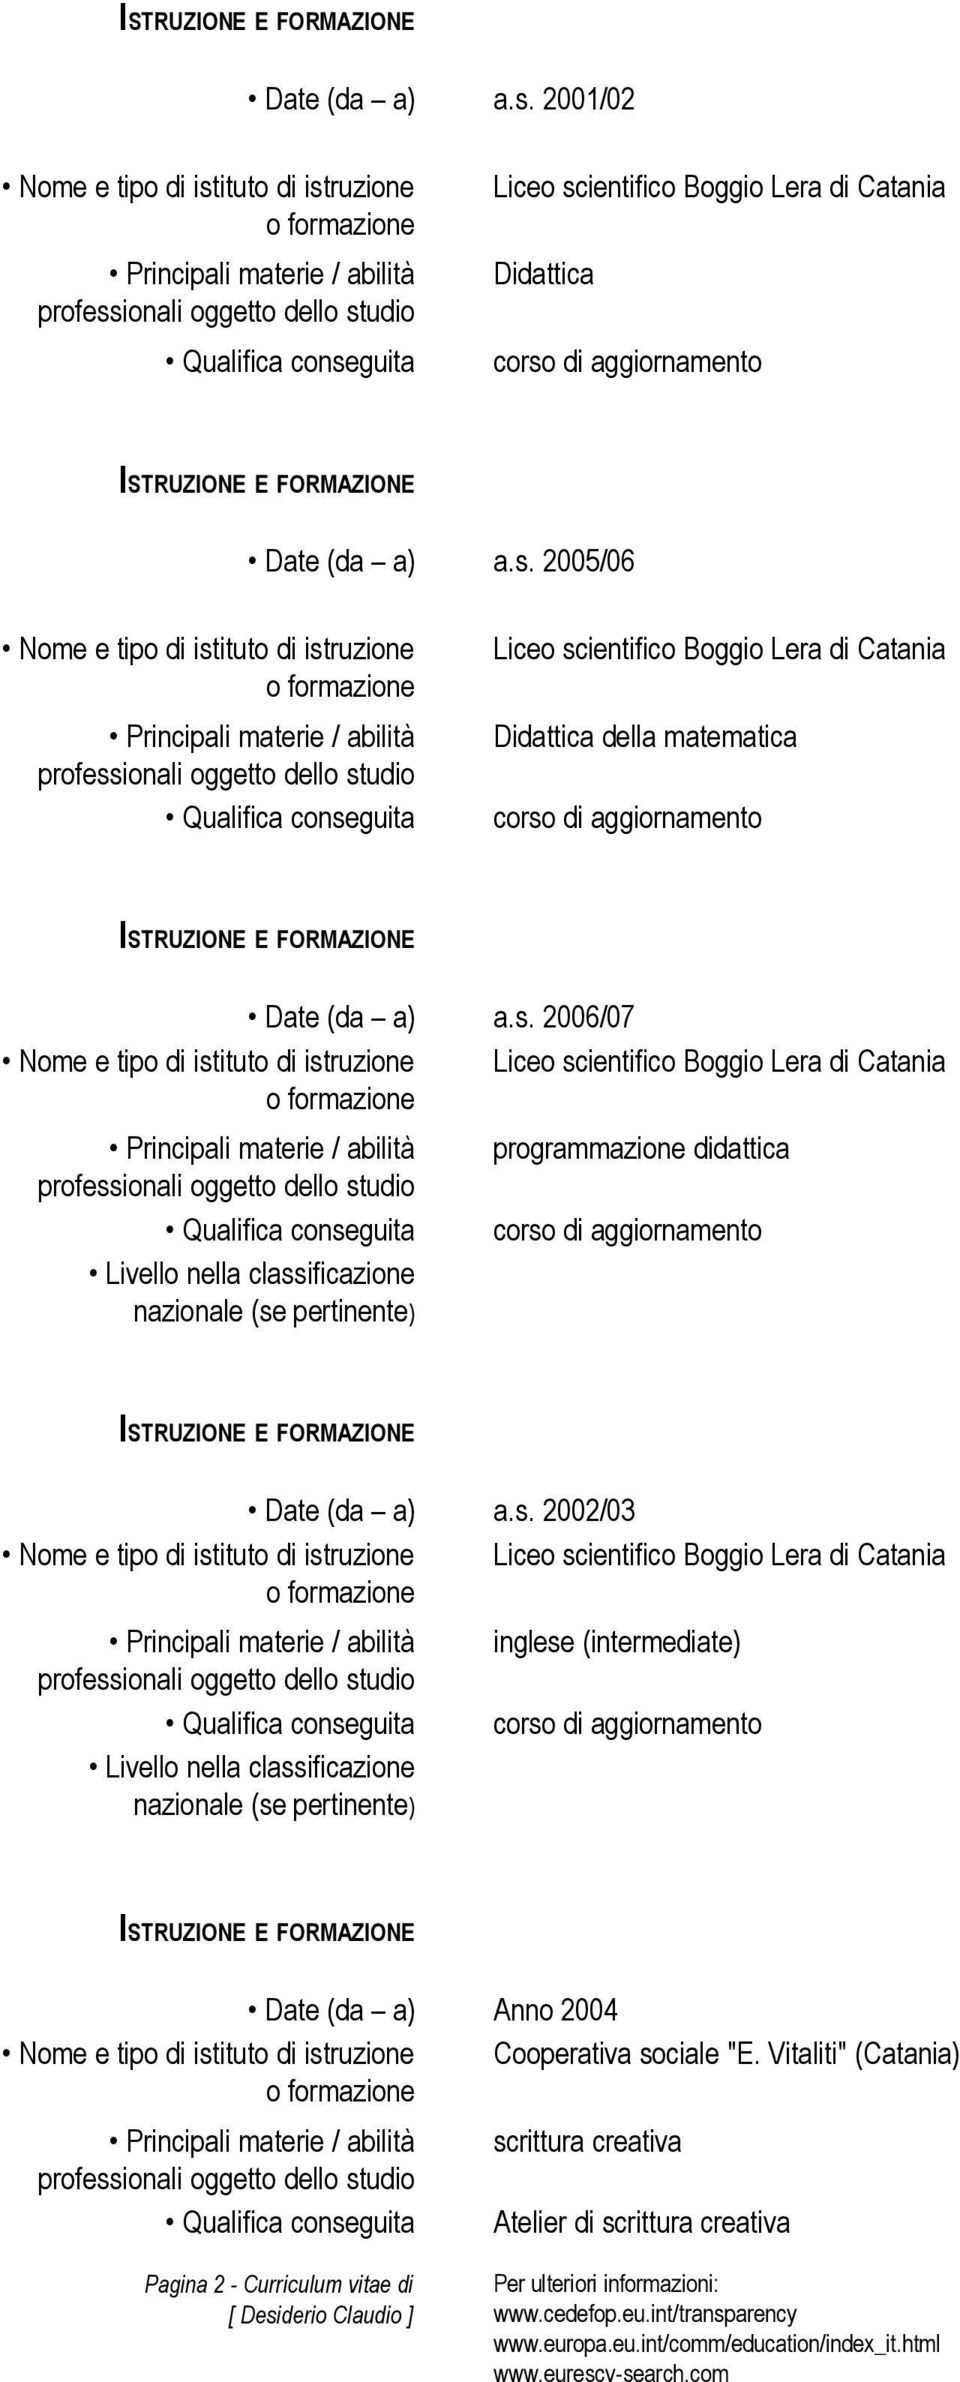 2002/03 Liceo scientifico Boggio Lera di Catania Livello nella classificazione nazionale (se pertinente) inglese (intermediate) corso di aggiornamento Date (da a) Anno 2004